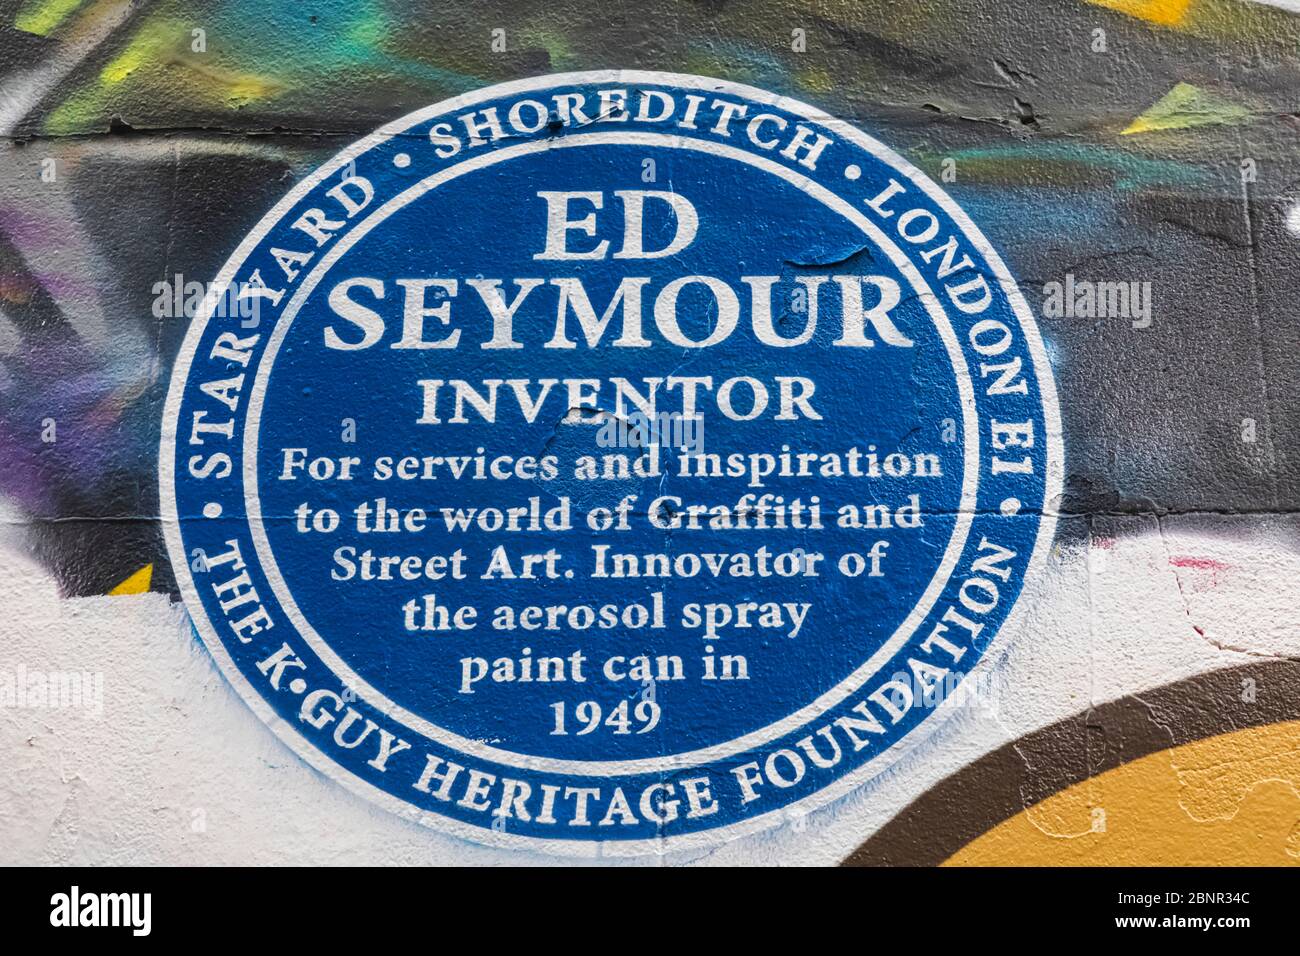 England, London, Shoredisch, Wandkunst mit blauer Plakette für Ed Seymour Inovator von der Aerosolspray Paint Can im Jahr 1949 Stockfoto